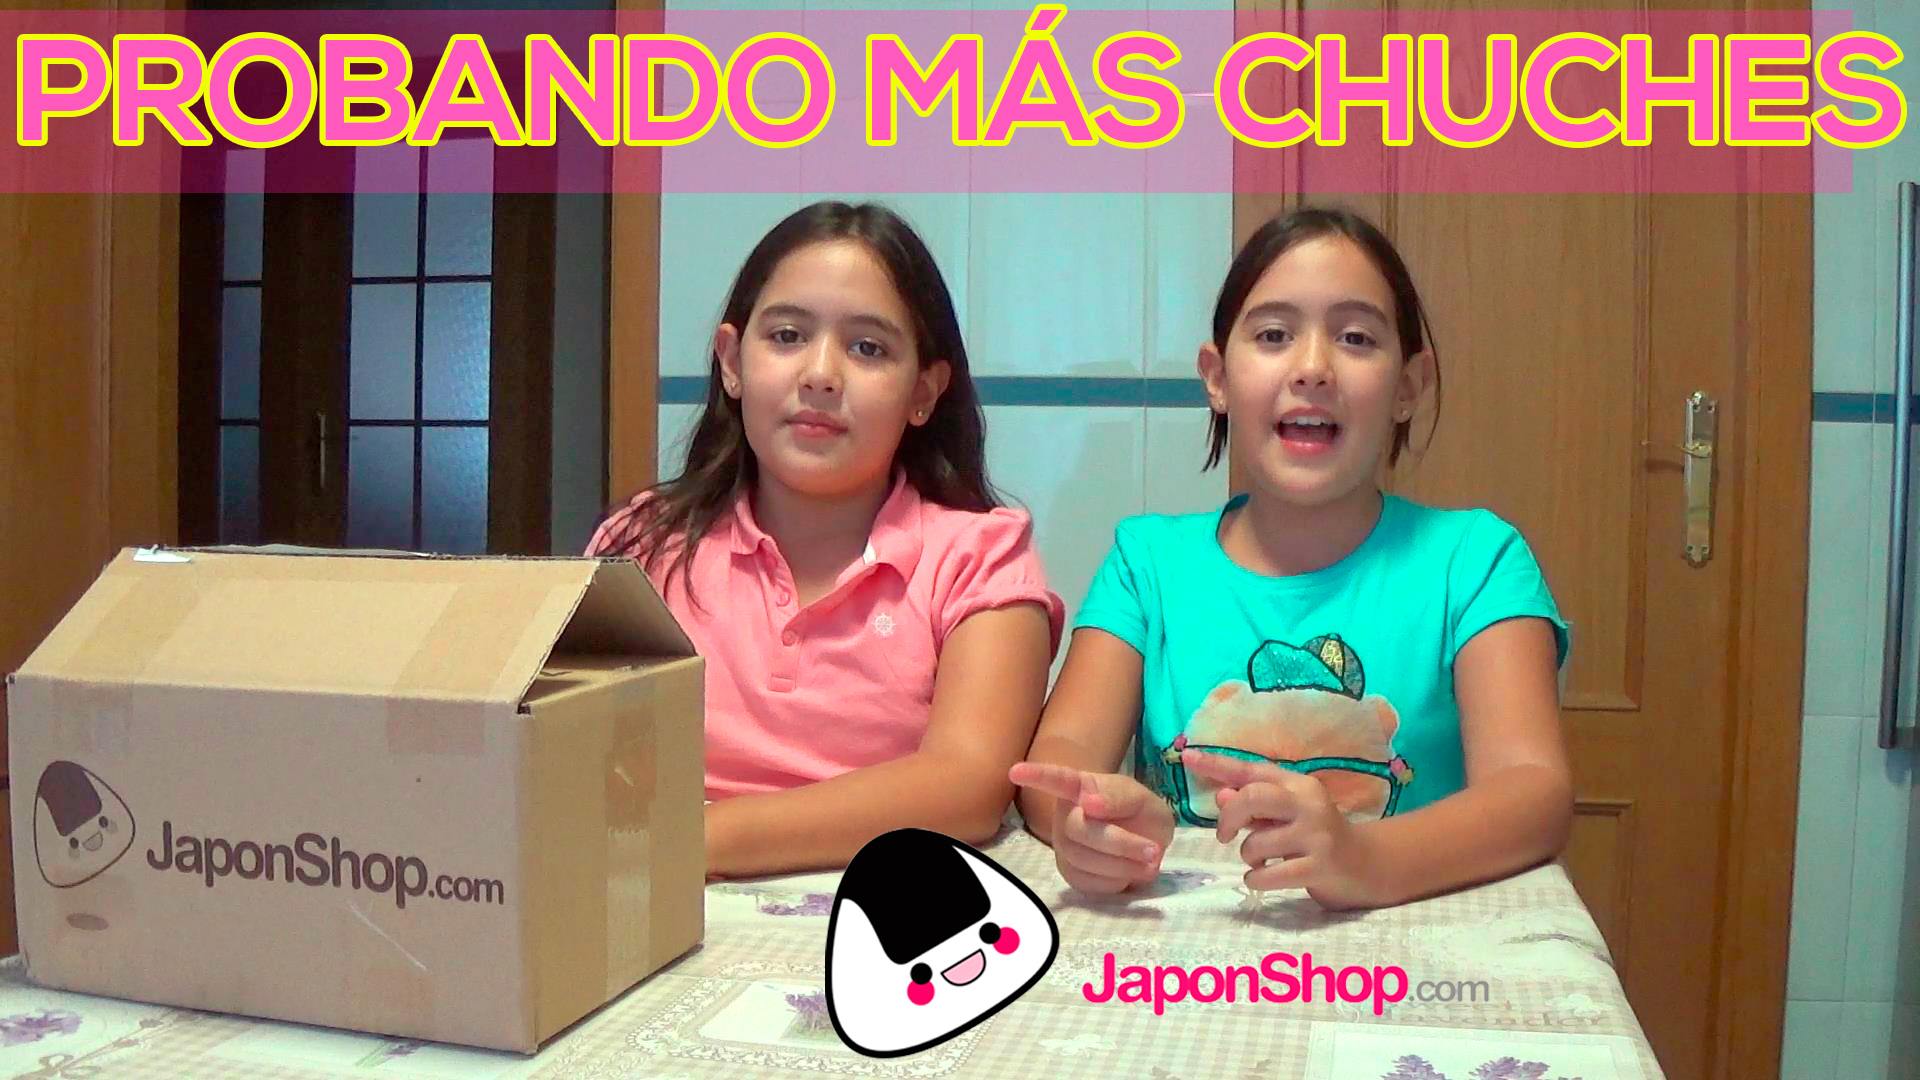 Probando más chuches de JaponShop, con Marta y Sofía